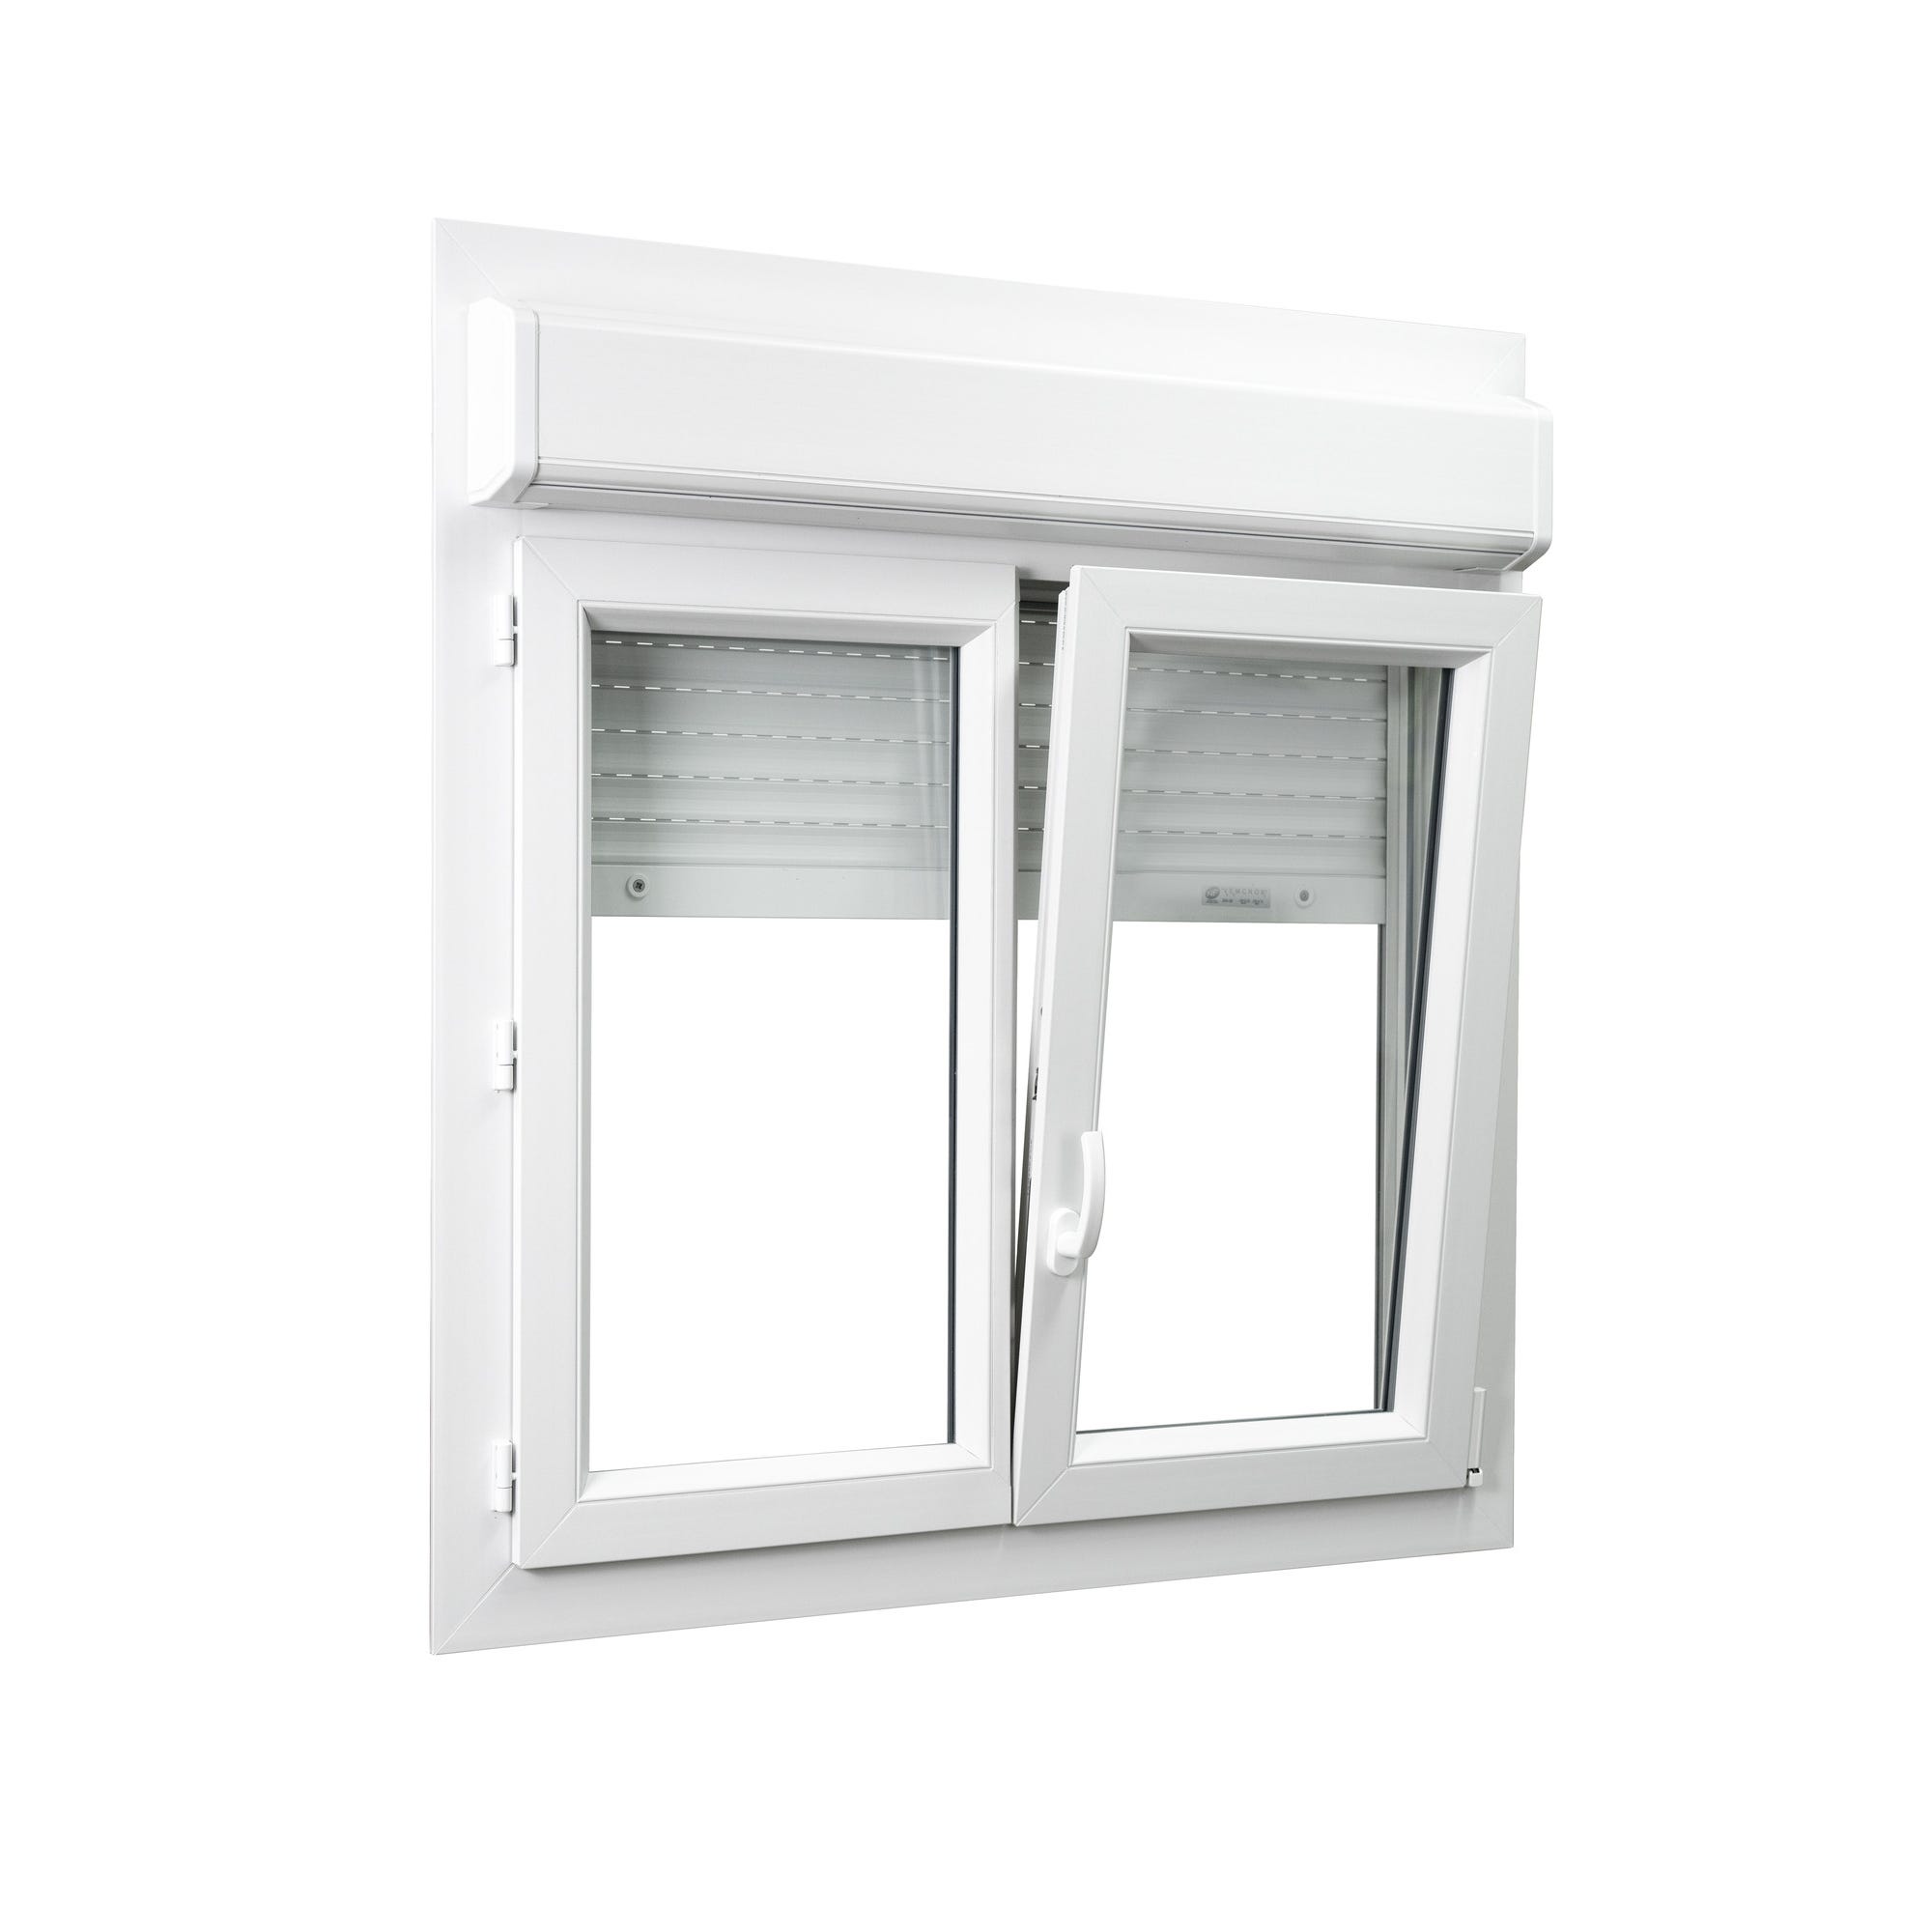 Fenêtre PVC 2 vantaux avec volet roulant intégré monobloc H.135 x l.100 cm - GROSFILLEX 1